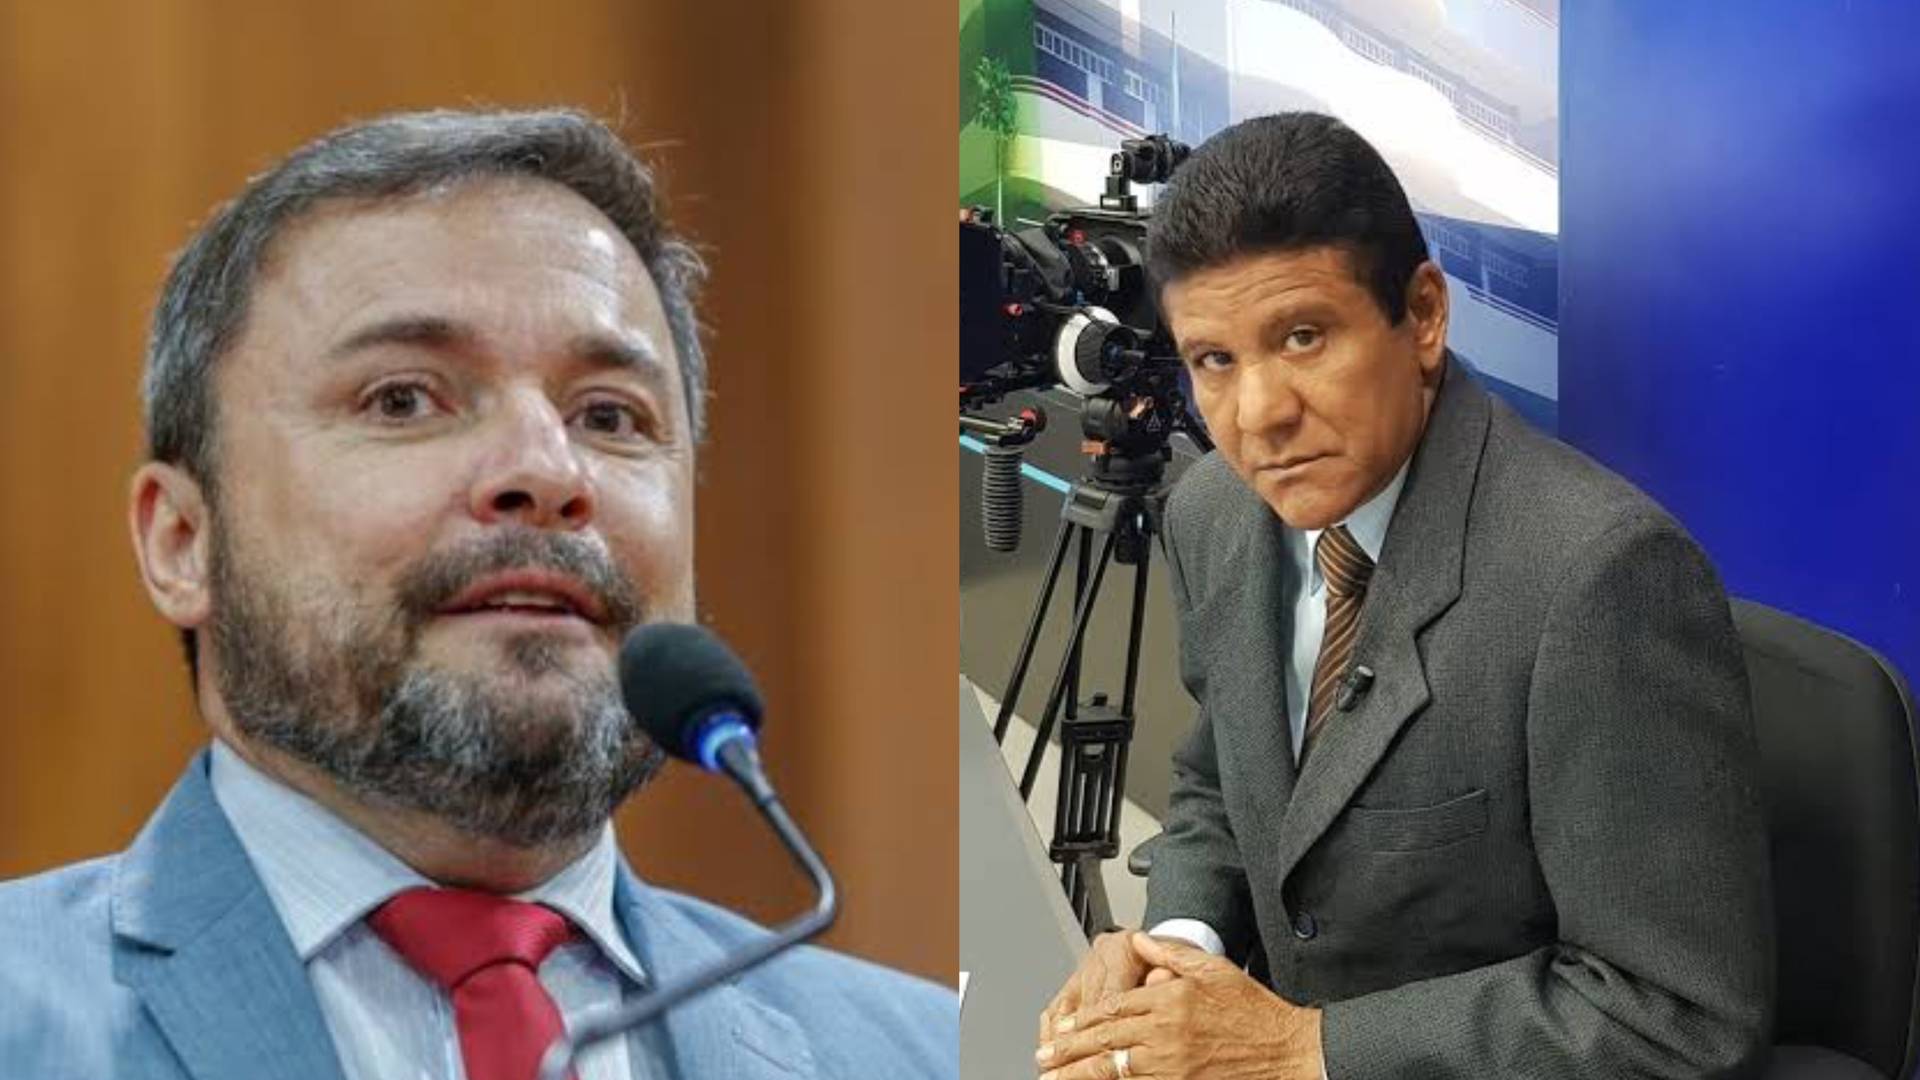 URGENTE: Jornalista do Piauí teria sido demitido de emissora após divergir de pré-candidato do PT em entrevista